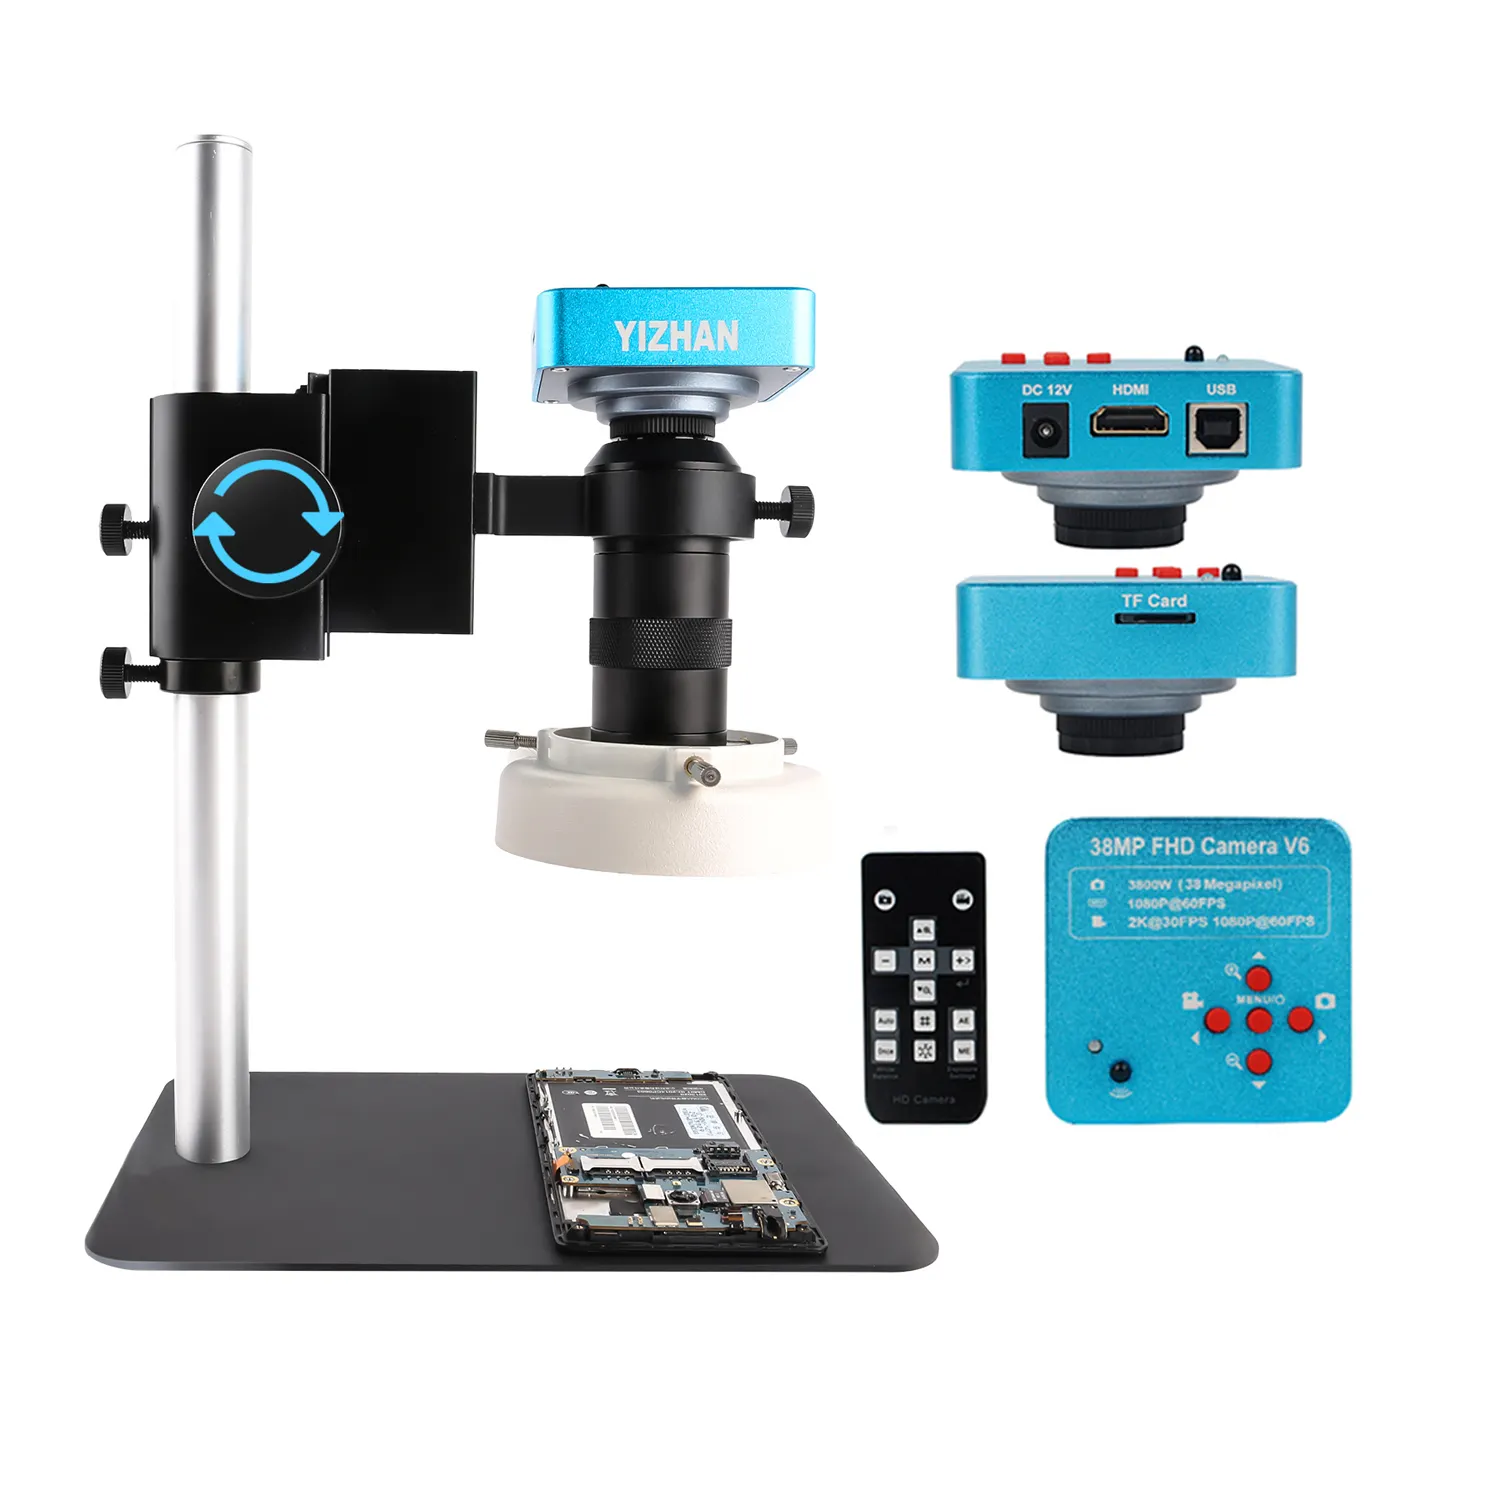 Video Microscoop 38MP Usb Industriële Microscoop Camera 1080P 60FPS 130X C-Mount Lens Led Licht Voor Reparatie Solderen chip